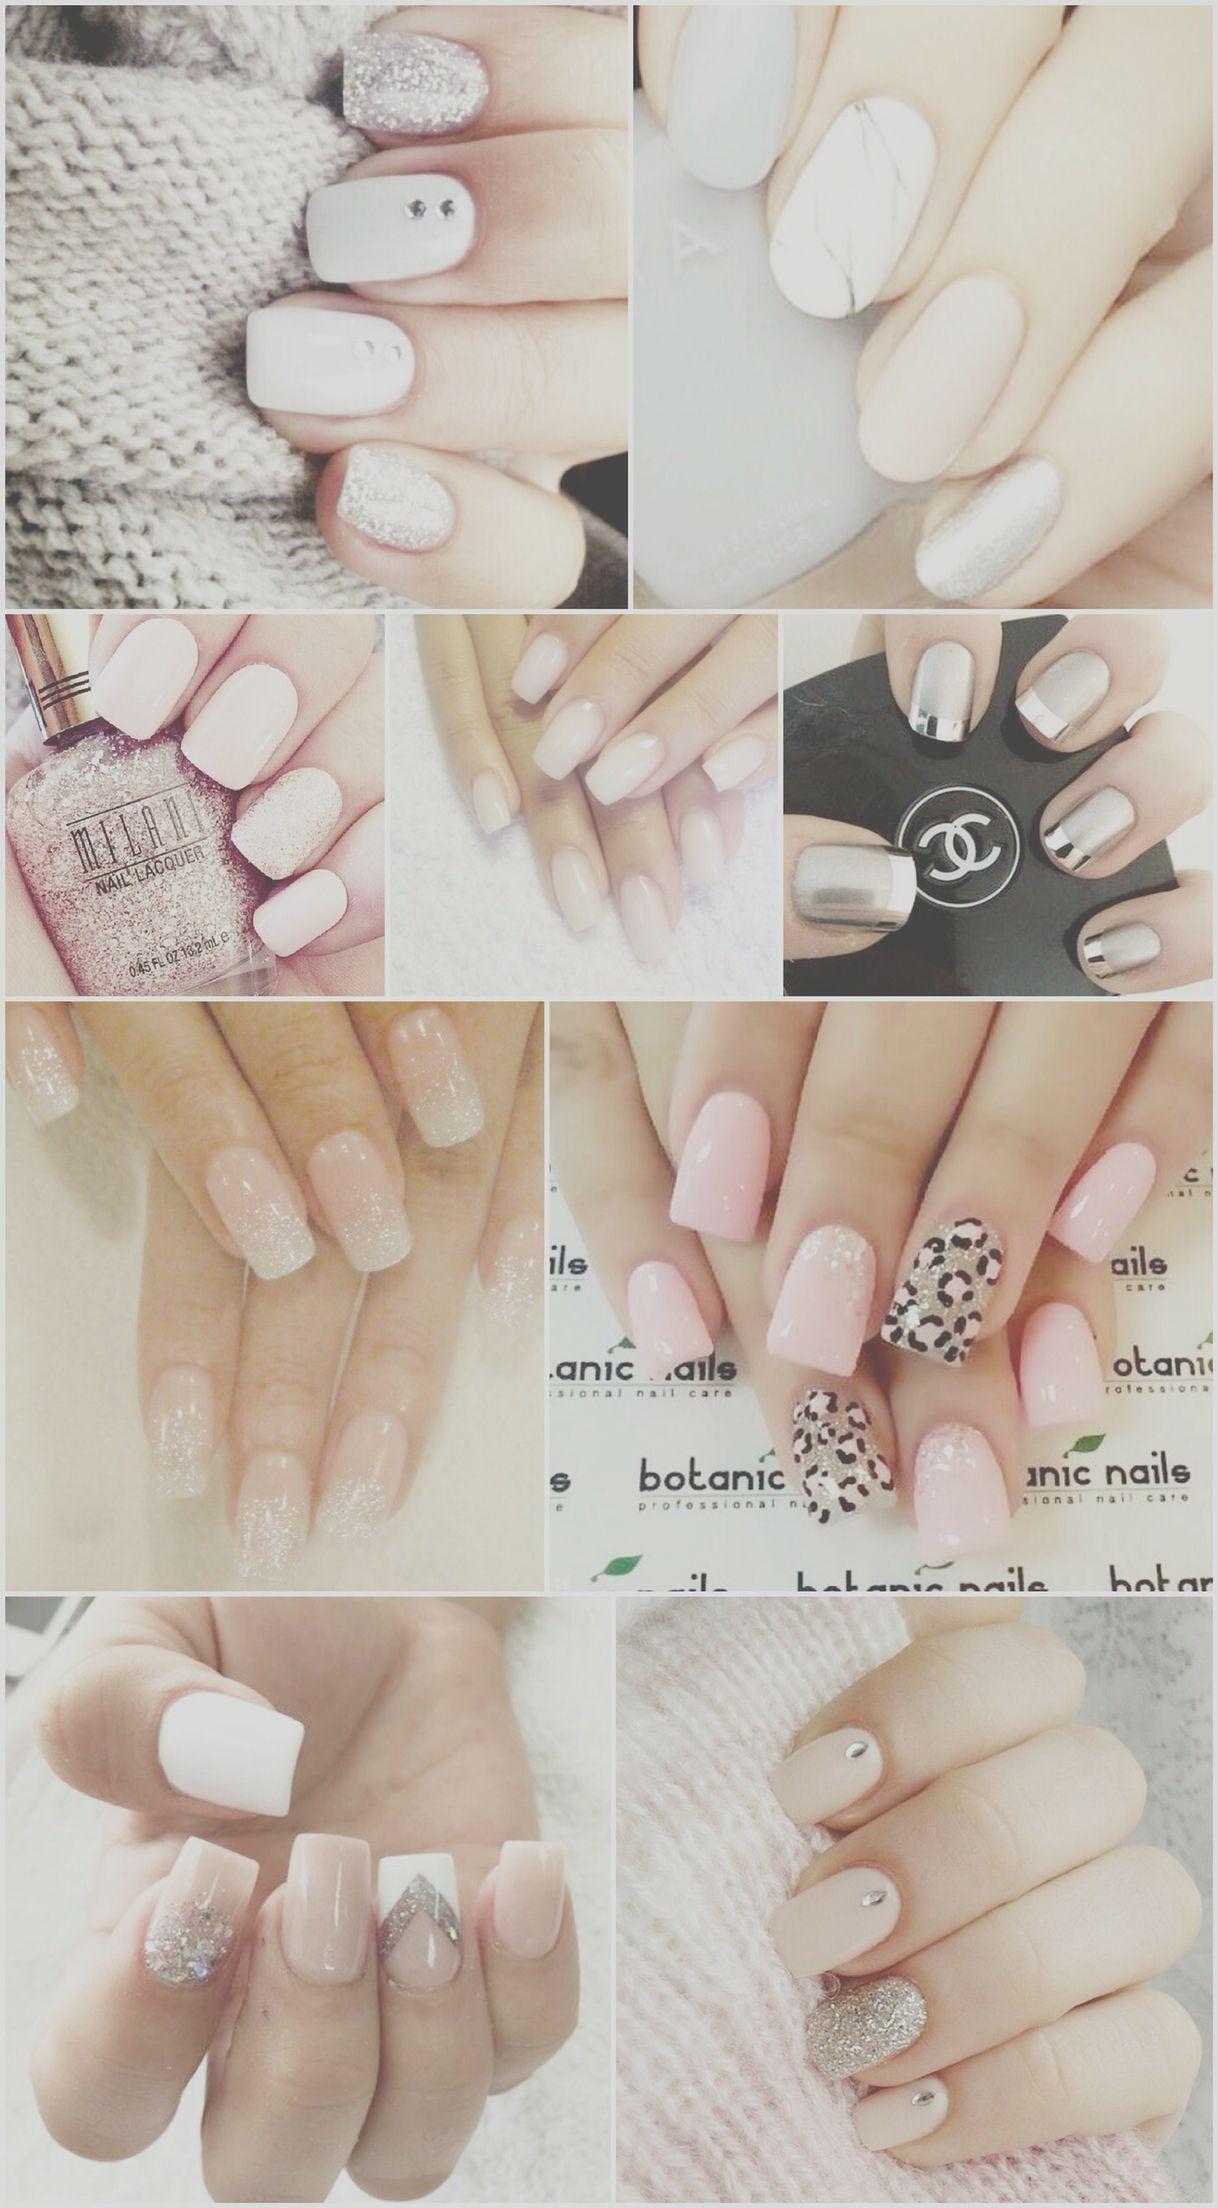 nails, wallpaper, Polish, varnish, art, pretty, background, beautiful, iPhone, android. Nail art, Nails, Beauty nails